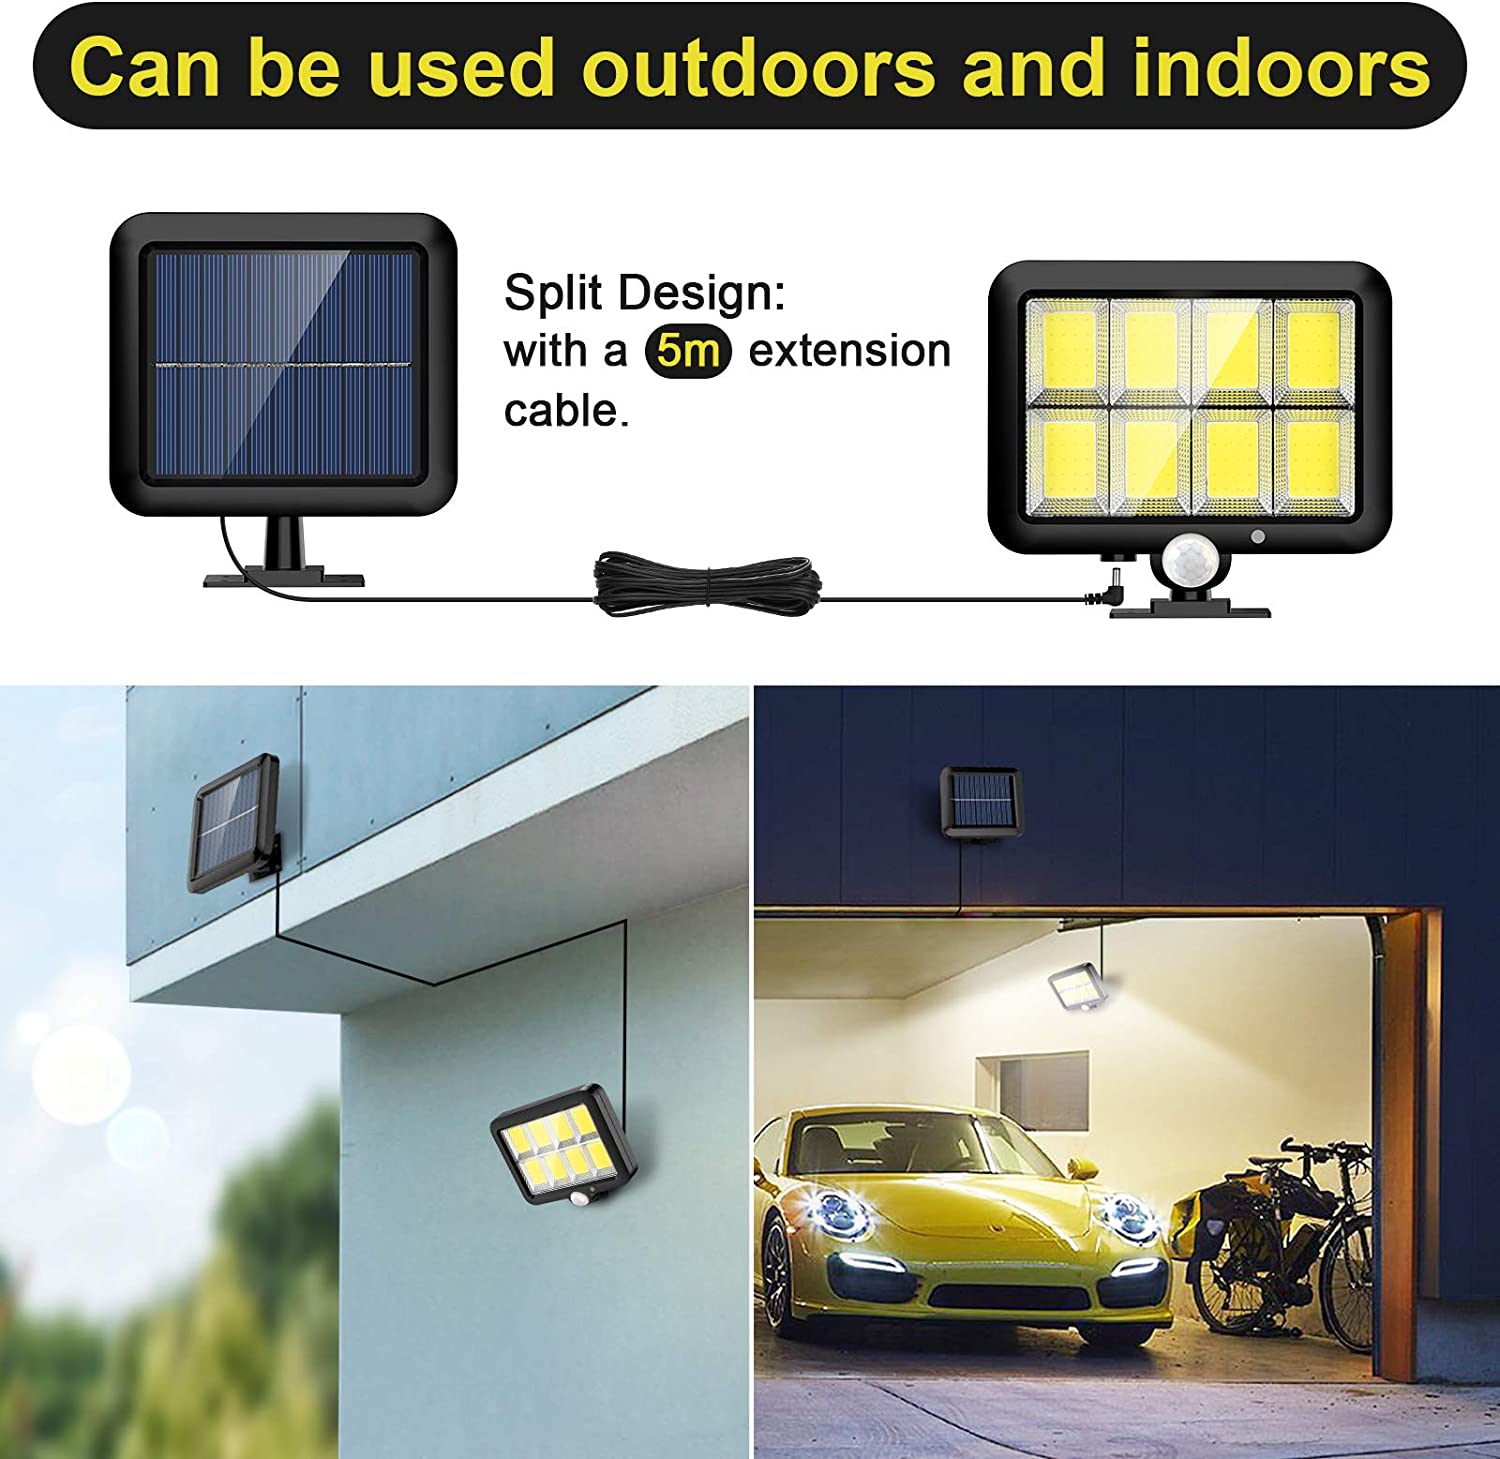 LED-Flood-Street-Lights-Solar-Lights-Outdoor-Motion-Sensor-Security-Led-Flood-Light-160-Bright-COB-LED-Adjustable-Solar-Panel-3-Lighting-Modes-for-Yard-Garden-Garage-14